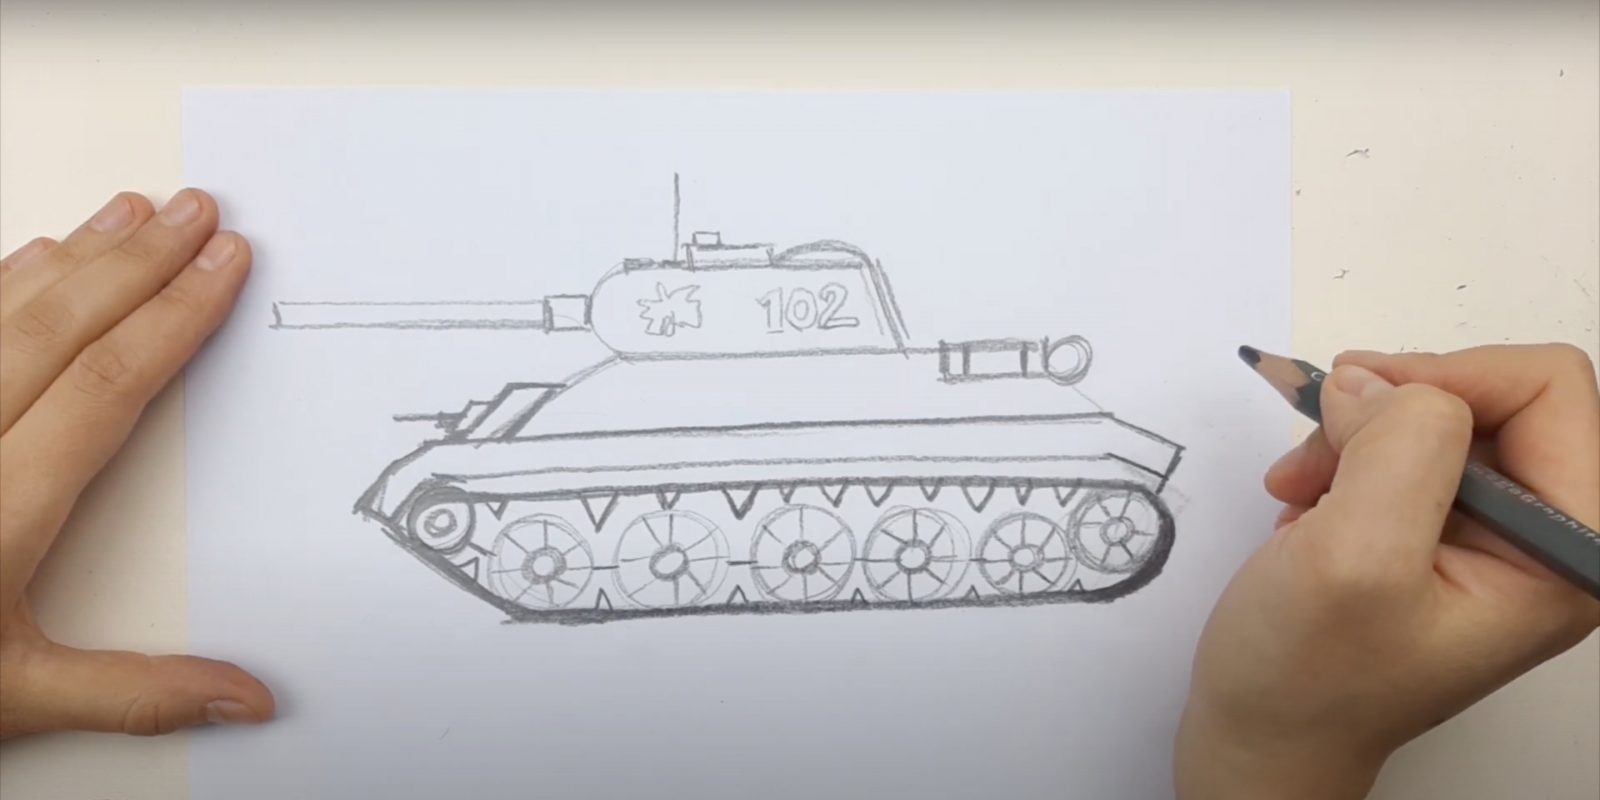 Нарисованный танк на руке